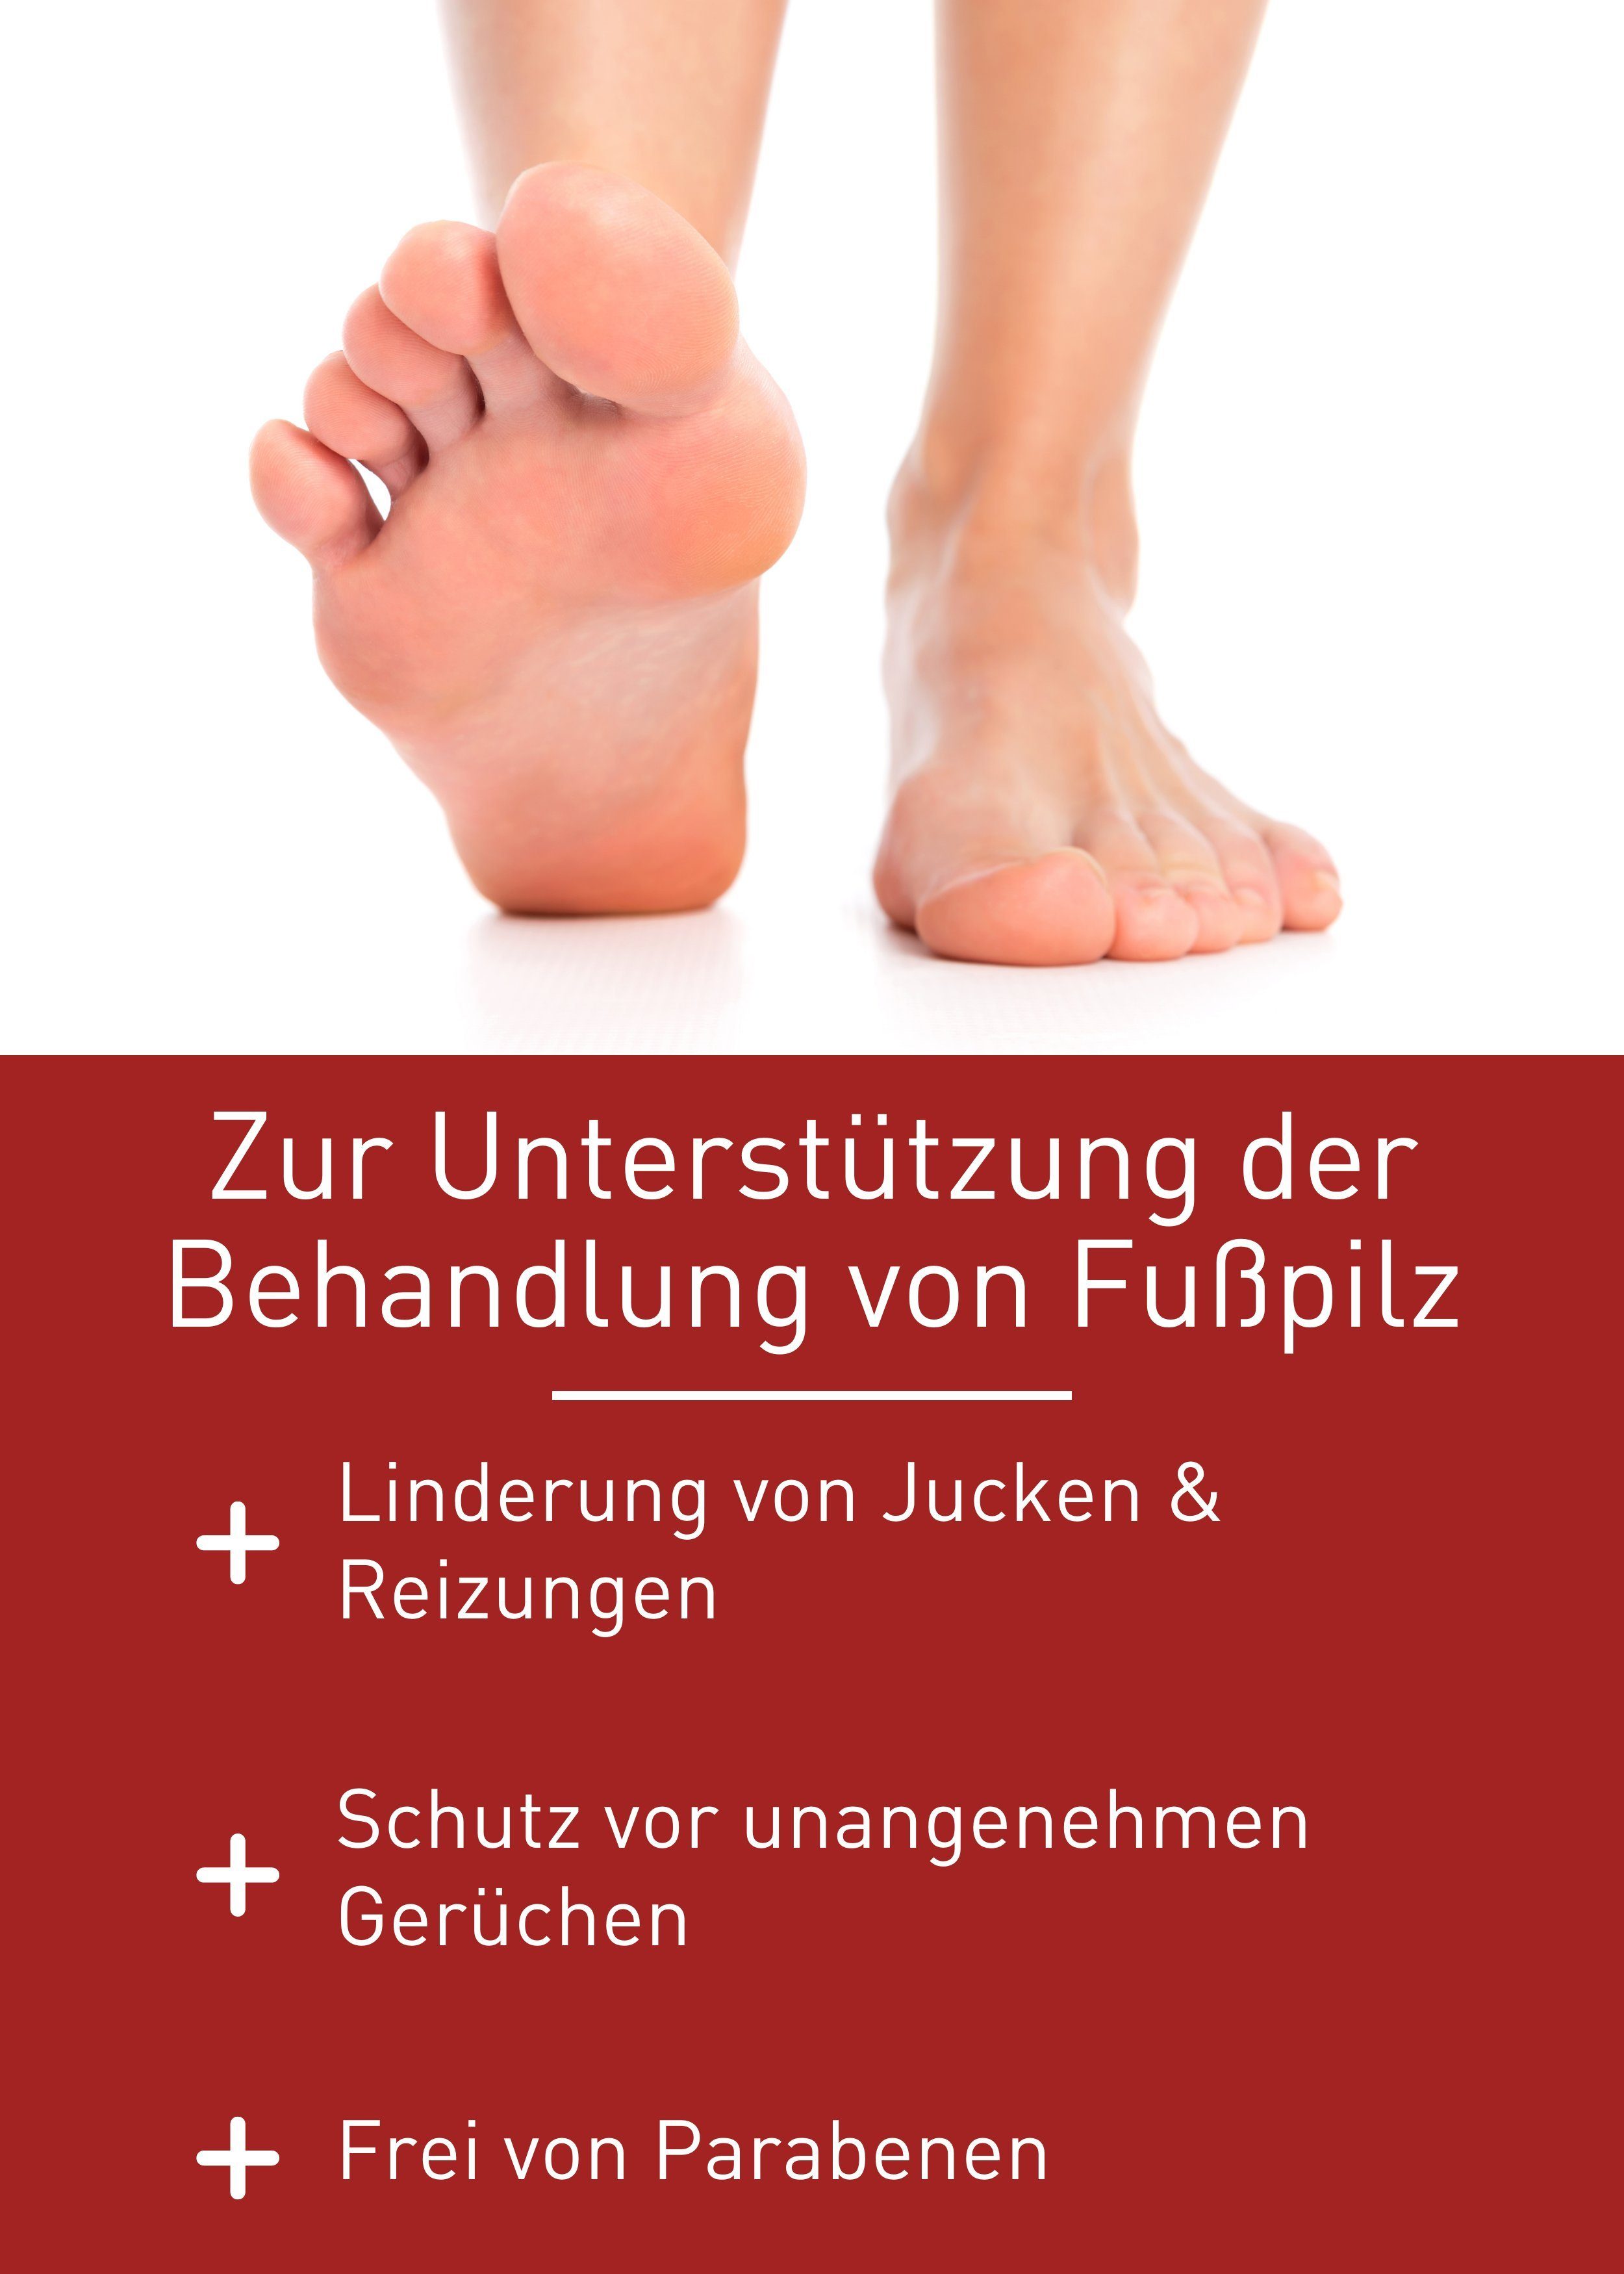 patentierte von zur Fußpflegecreme Medizinprodukt, Gel Fußpilz, Behandlung Healthcare N1 Fußpilz Rezeptur